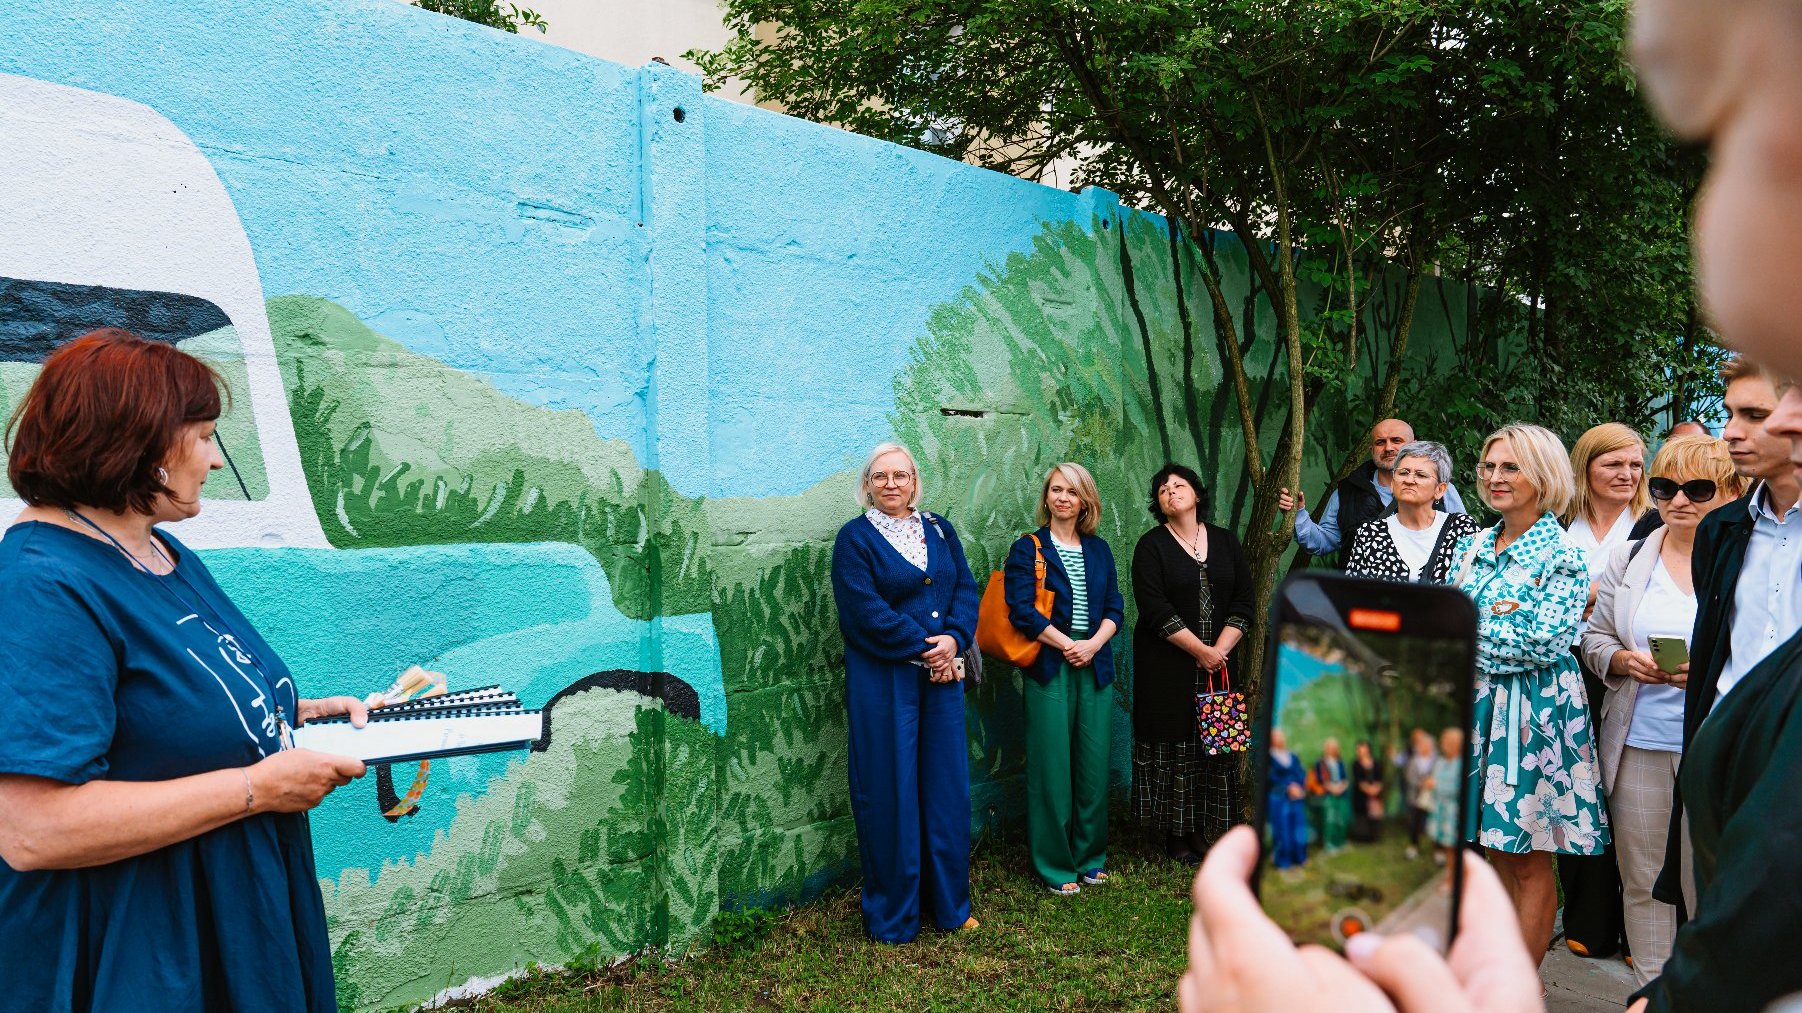 Na zdjęciu kobieta przed muralem coś tłumaczy, słuchają jej inni ludzie